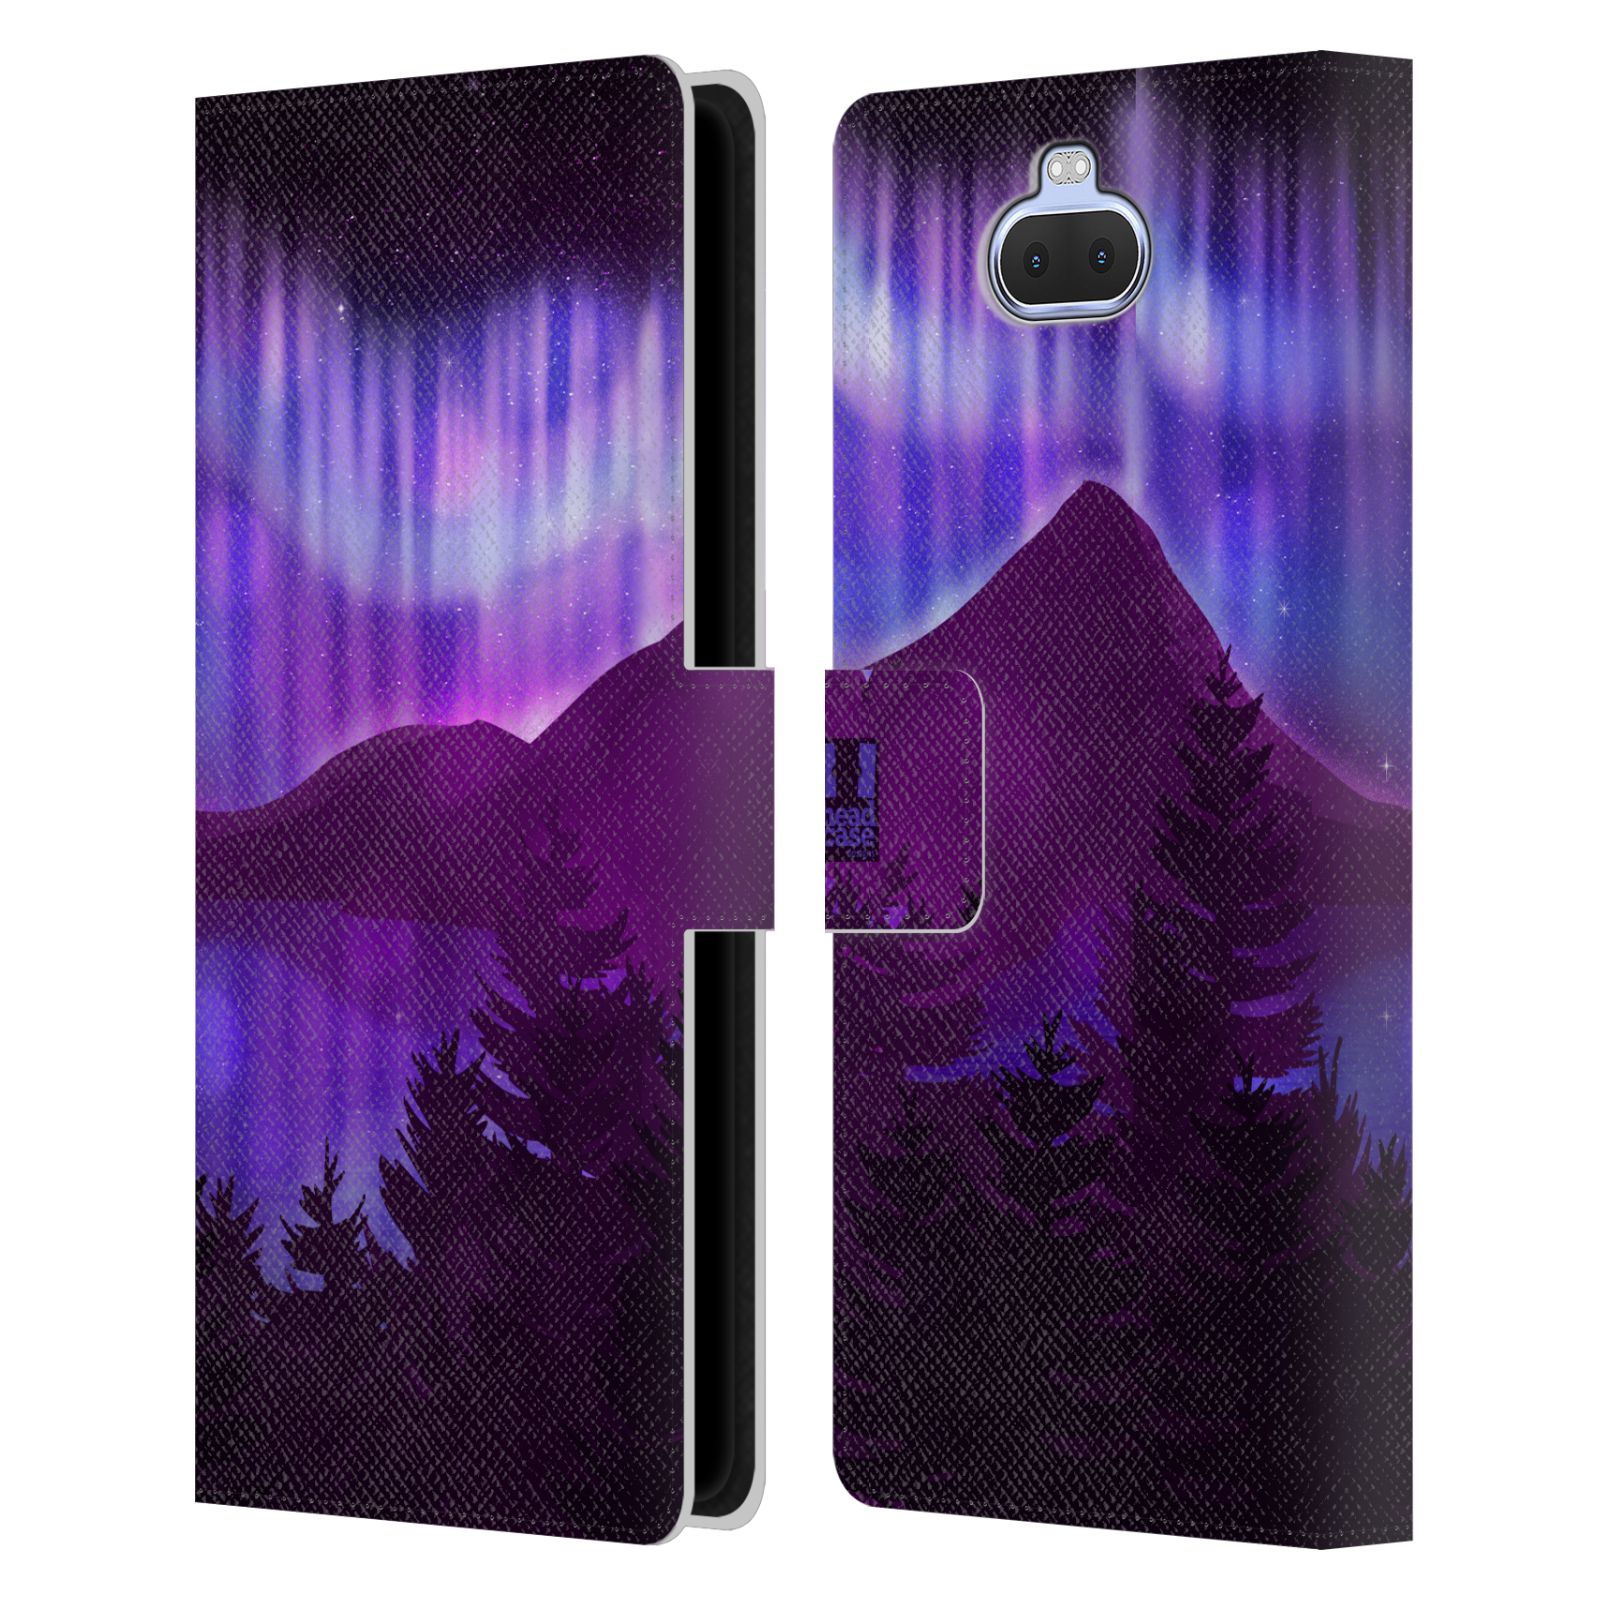 Pouzdro na mobil Sony Xperia 10 PLUS  - HEAD CASE - Hory a lesy fialový odstín